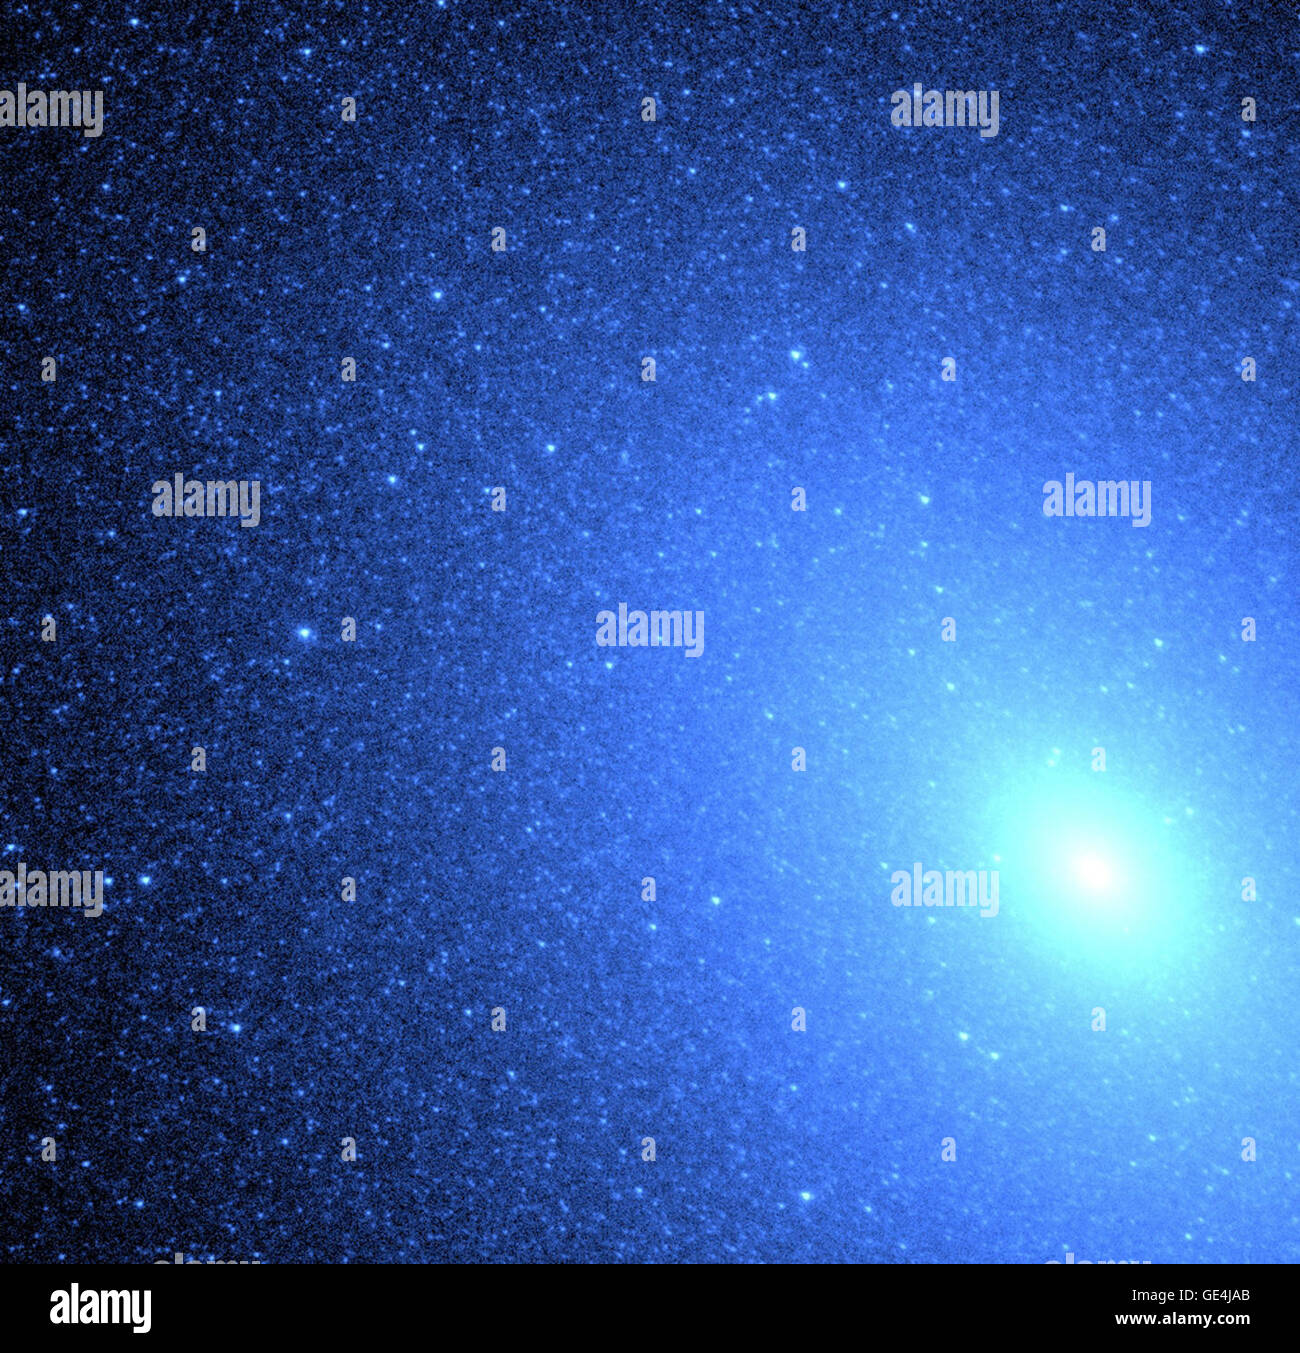 (26 Oktober 1999) Hubble Space Telescope exquisite Auflösung ermöglichte es Astronomen zu lösen, zum ersten Mal heißen blauen Sternen tief in einer elliptischen Galaxie. Der Schwarm von fast 8.000 blauen Sternen ähnelt einen Schneesturm von Schneeflocken in der Nähe der Kern (unten rechts) der benachbarten Galaxie M32, befindet sich 2,5 Millionen Lichtjahre entfernt im Sternbild Andromeda. Hubble bestätigt, dass das UV-Licht aus einer Population von extrem heißen Helium brennenden Sternen in einem späten Stadium in ihrem Leben kommt. Im Gegensatz zur Sonne, die Wasserstoff zu Helium verbrennt, erschöpft diese alten Sternen ihre zentralen hyd Stockfoto